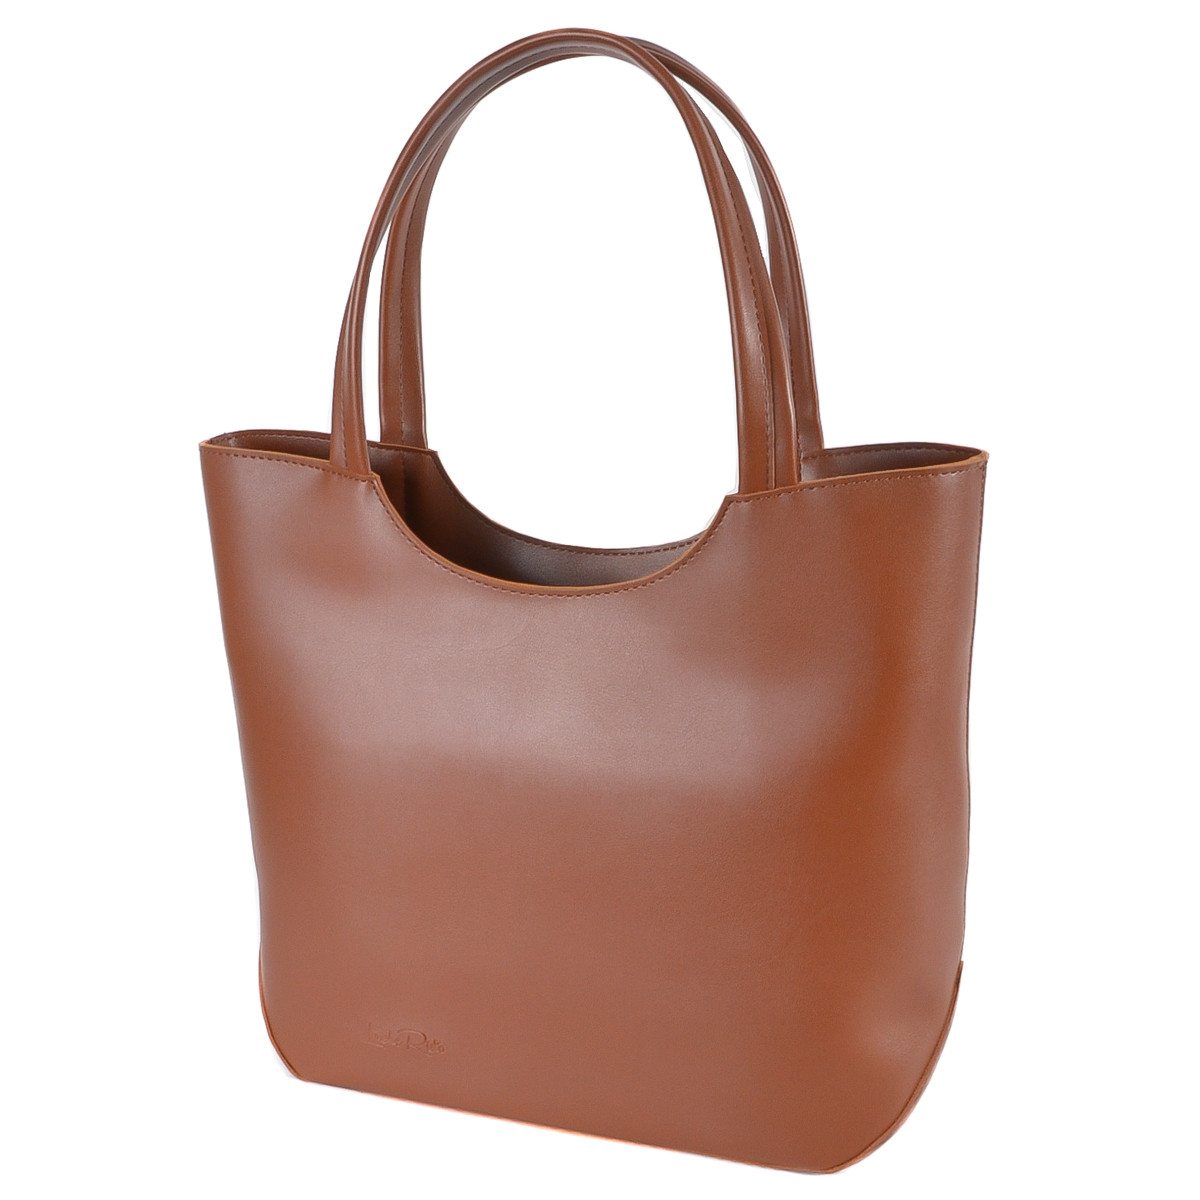 РУДА — елегантна сумка класичного дизайну та великого розміру з одним відділенням на блискавці (Луцьк, 789)